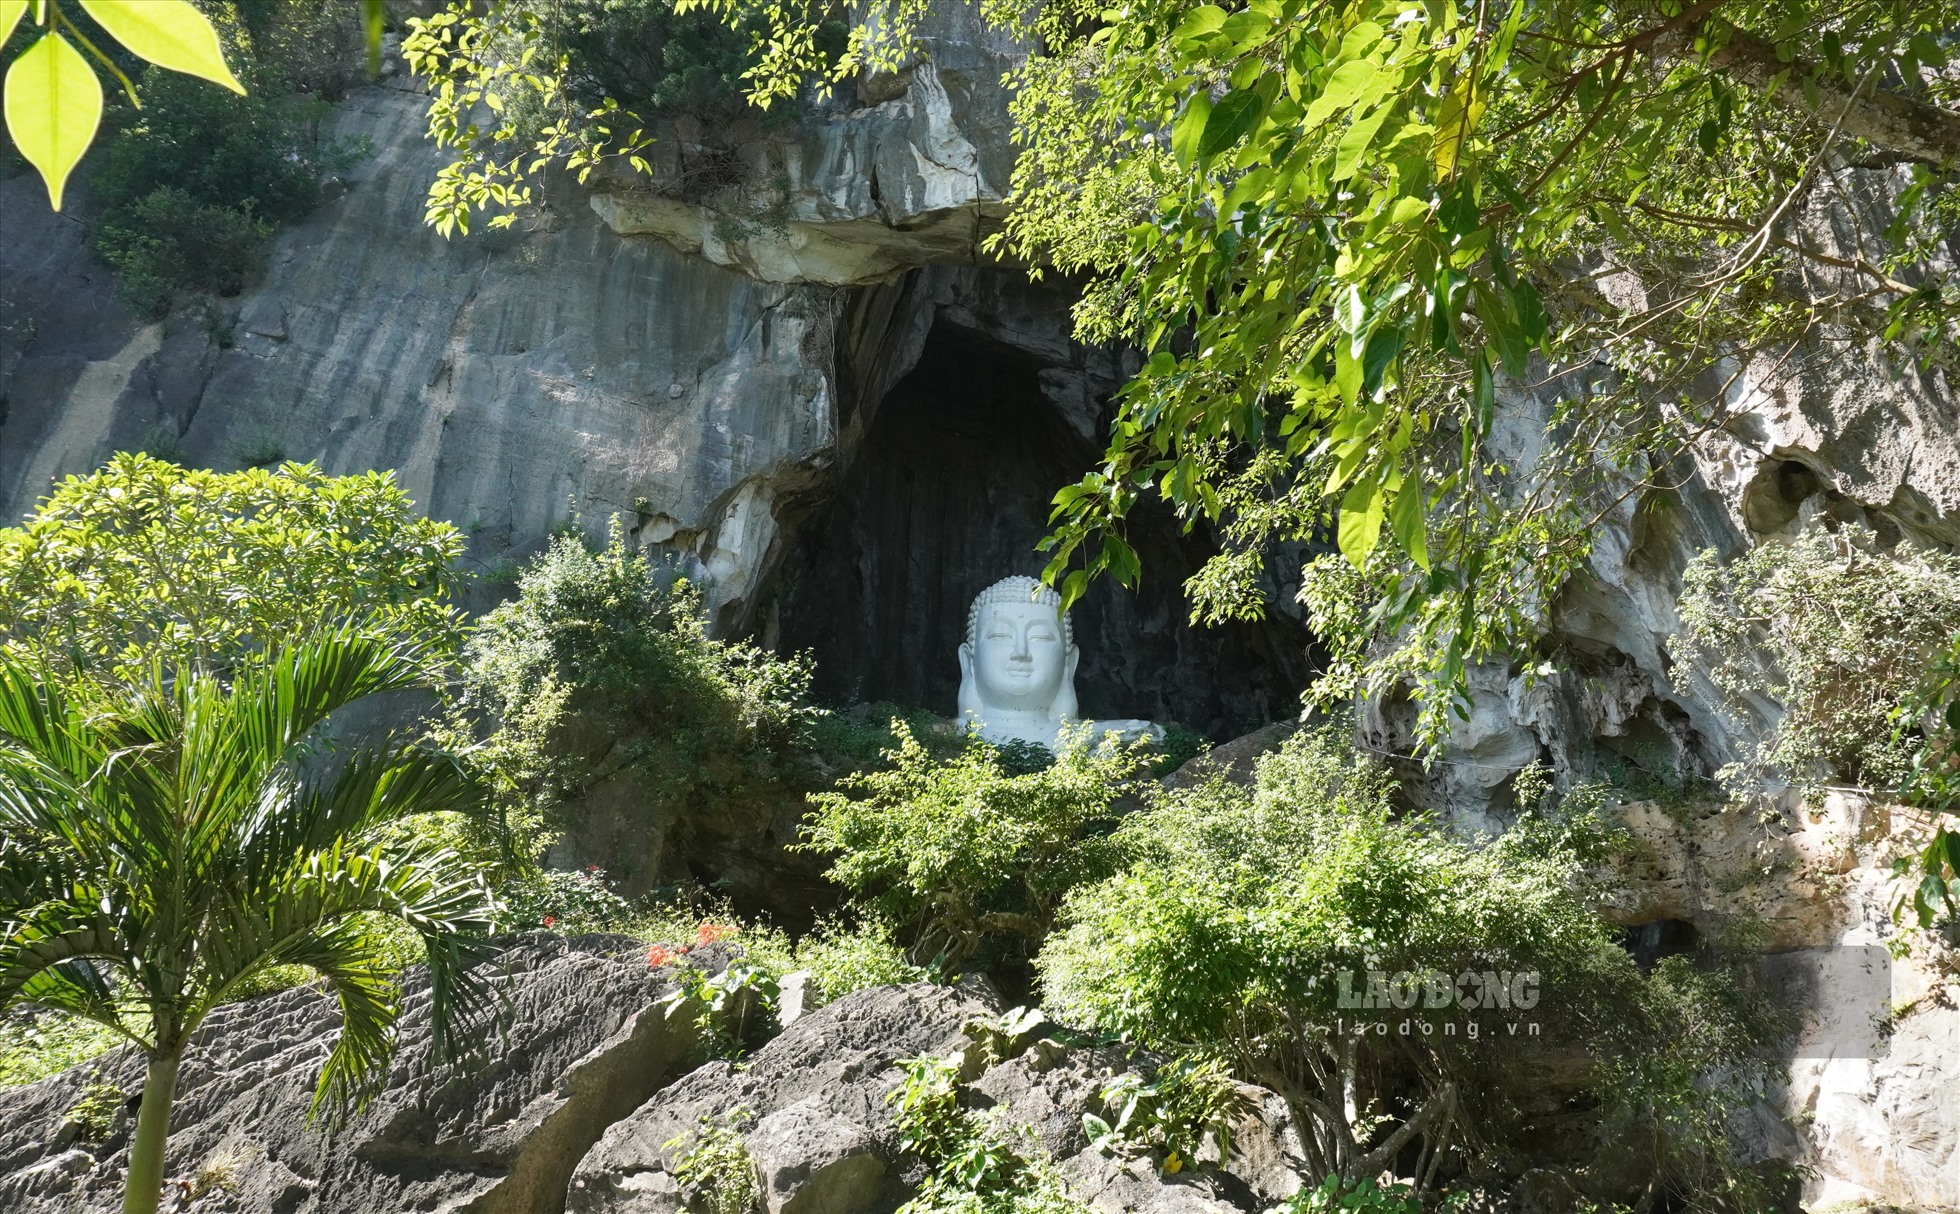 Đặc biệt, ở khu vực chùa Linh Ứng, có một bức tượng phật cỡ lớn nằm trong hang núi, thu hút sự chú ý, khám phá của du khách.